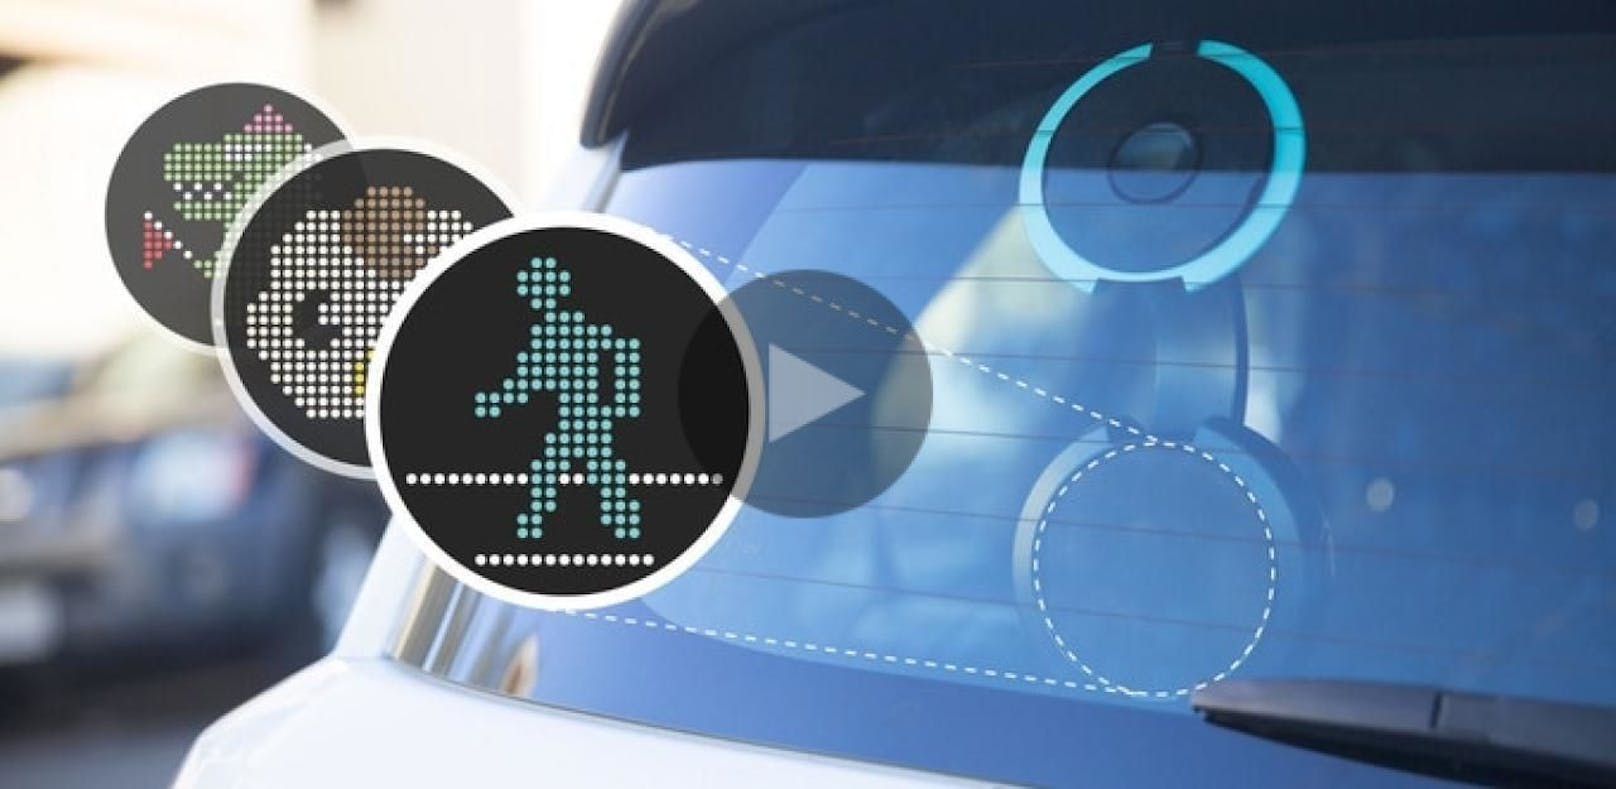 Autofahrer können bald mit Emojis kommunizieren